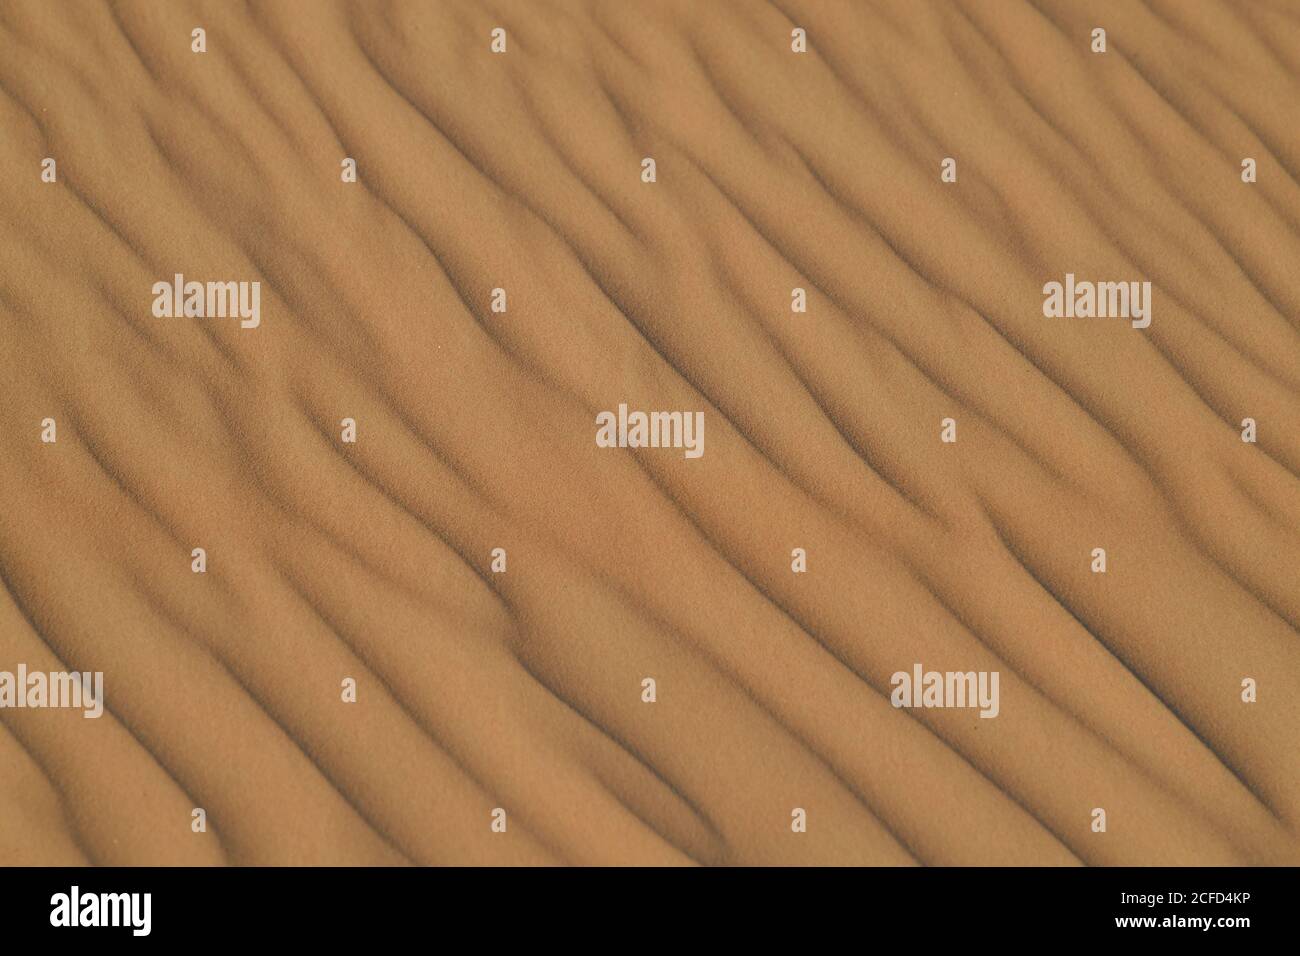 Arabische Halbinsel Wüste Sanddünen, die in verschiedenen Formen und Größen von den wechselnden Winden der Wüste Umwelt Landschaften konturiert. Stockfoto